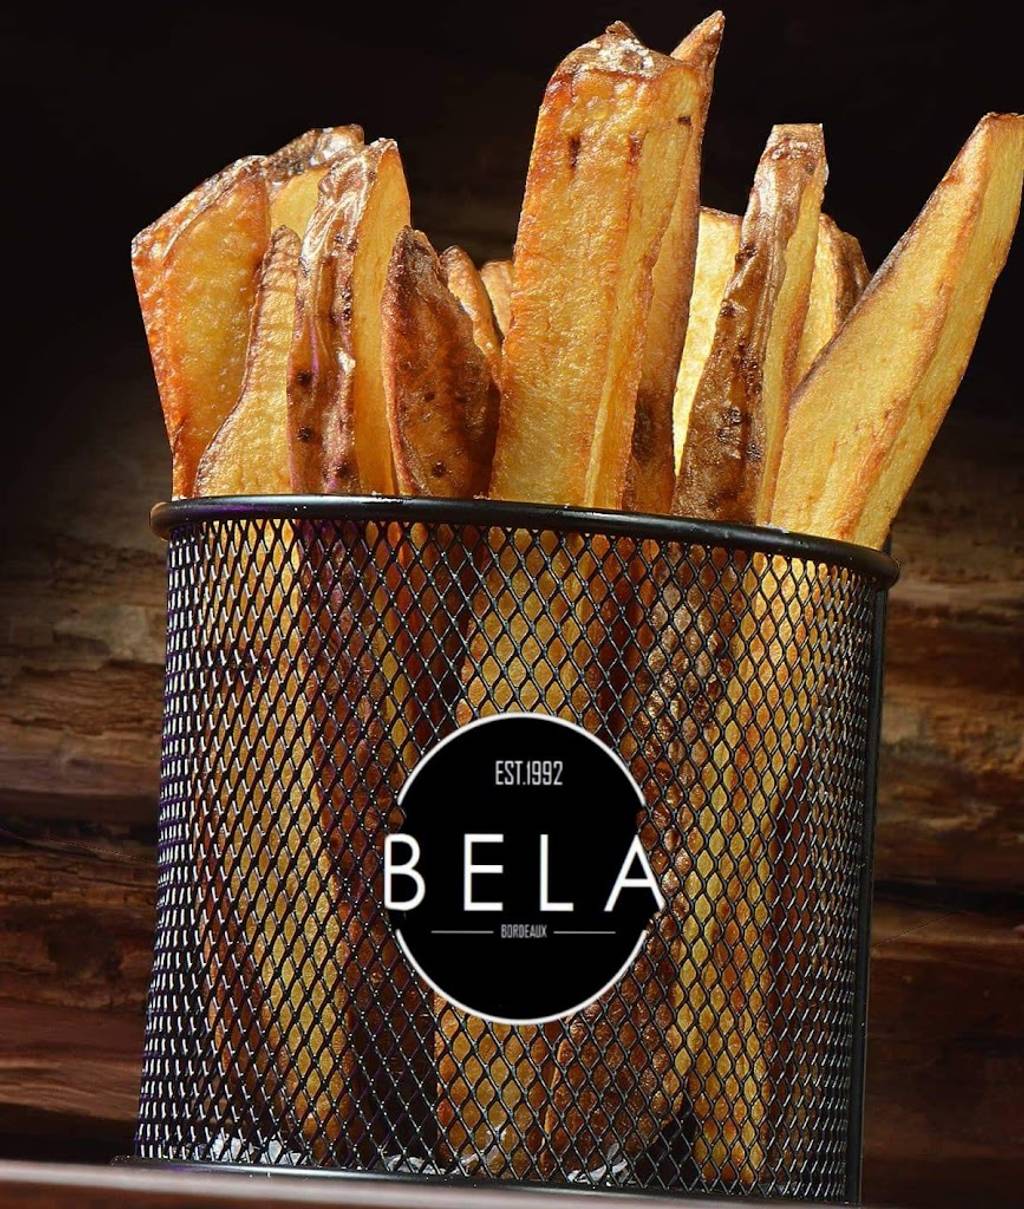 BELA | authentic Pizzas & Burgers | EST.1992 Bordeaux - Food Ingredient Tableware Staple food Cuisine